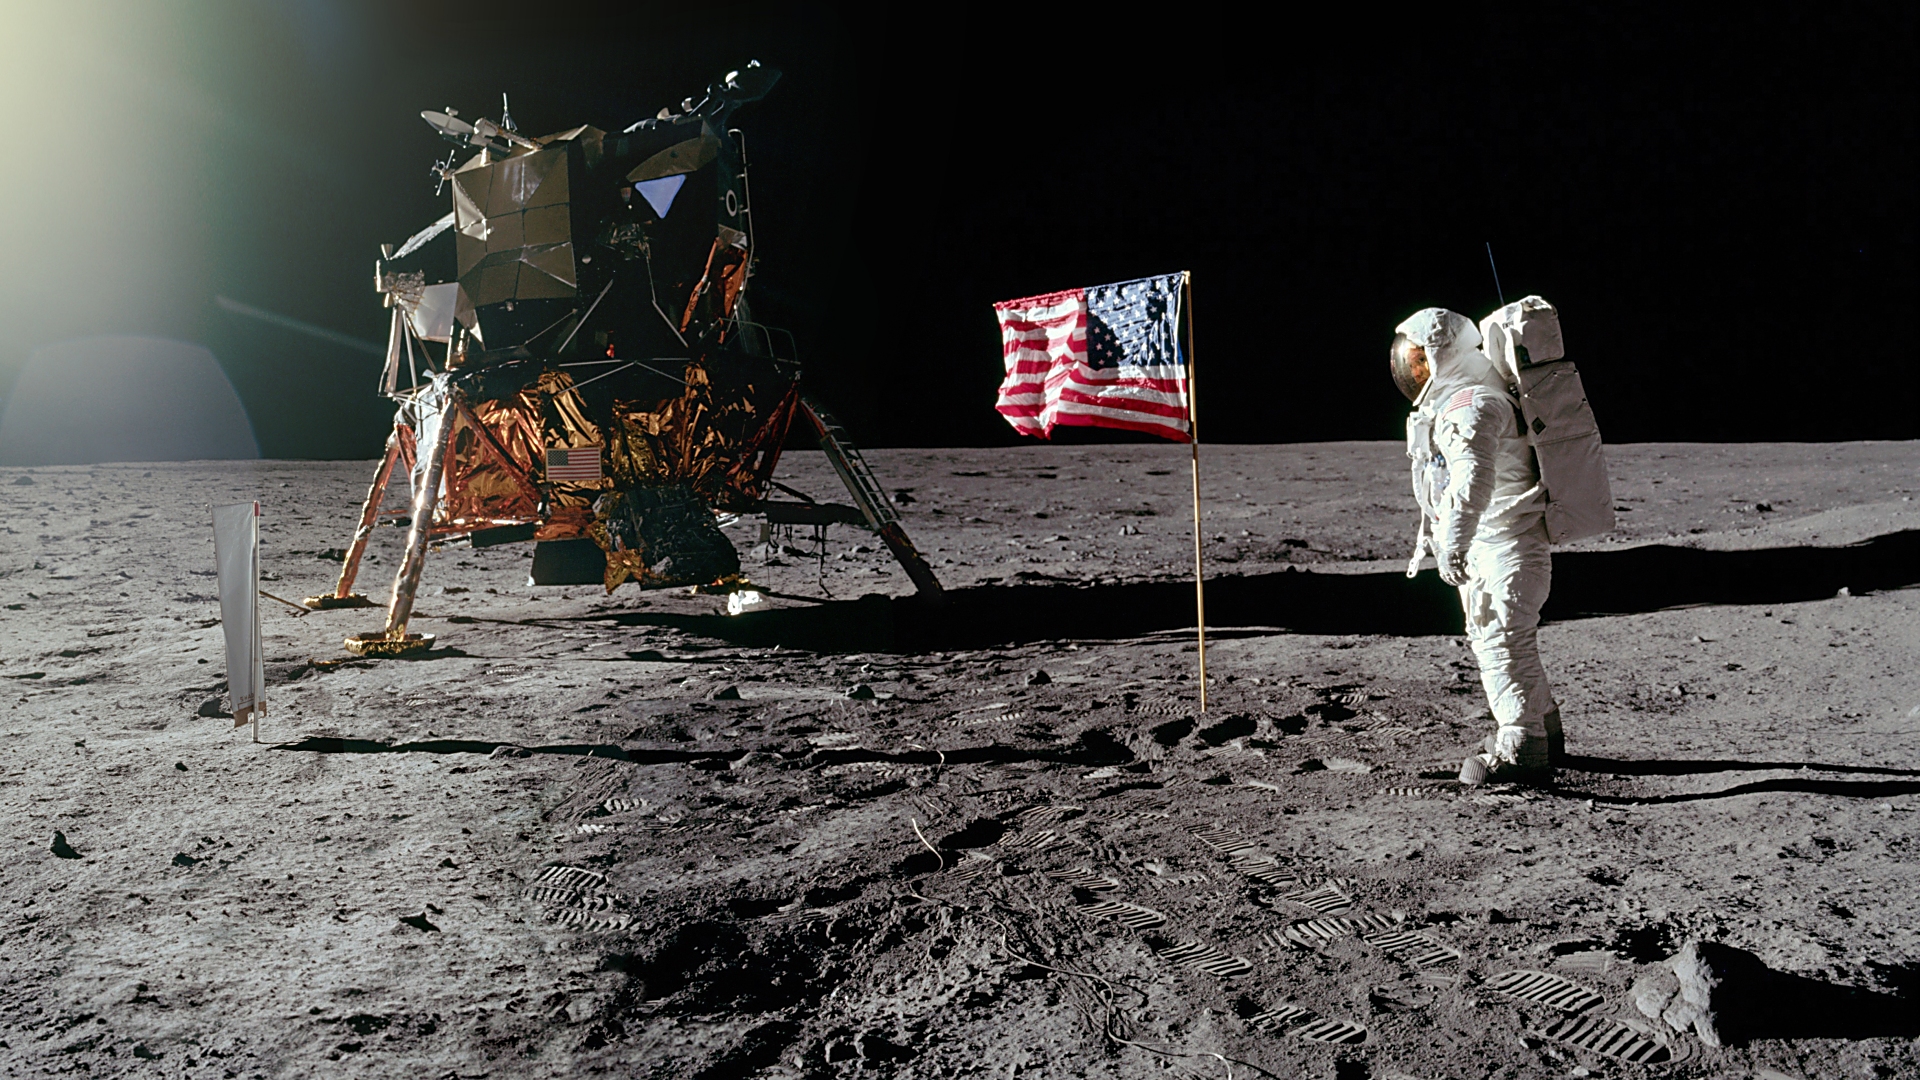 Les astronautes de la mission Apollo 11, Neil Armstrong et Buzz Aldrin, ont symboliquement planté un drapeau américain sur la Lune. © Images Nasa/JSC, Retraitements Olivier de Goursac. Tous droits réservés 